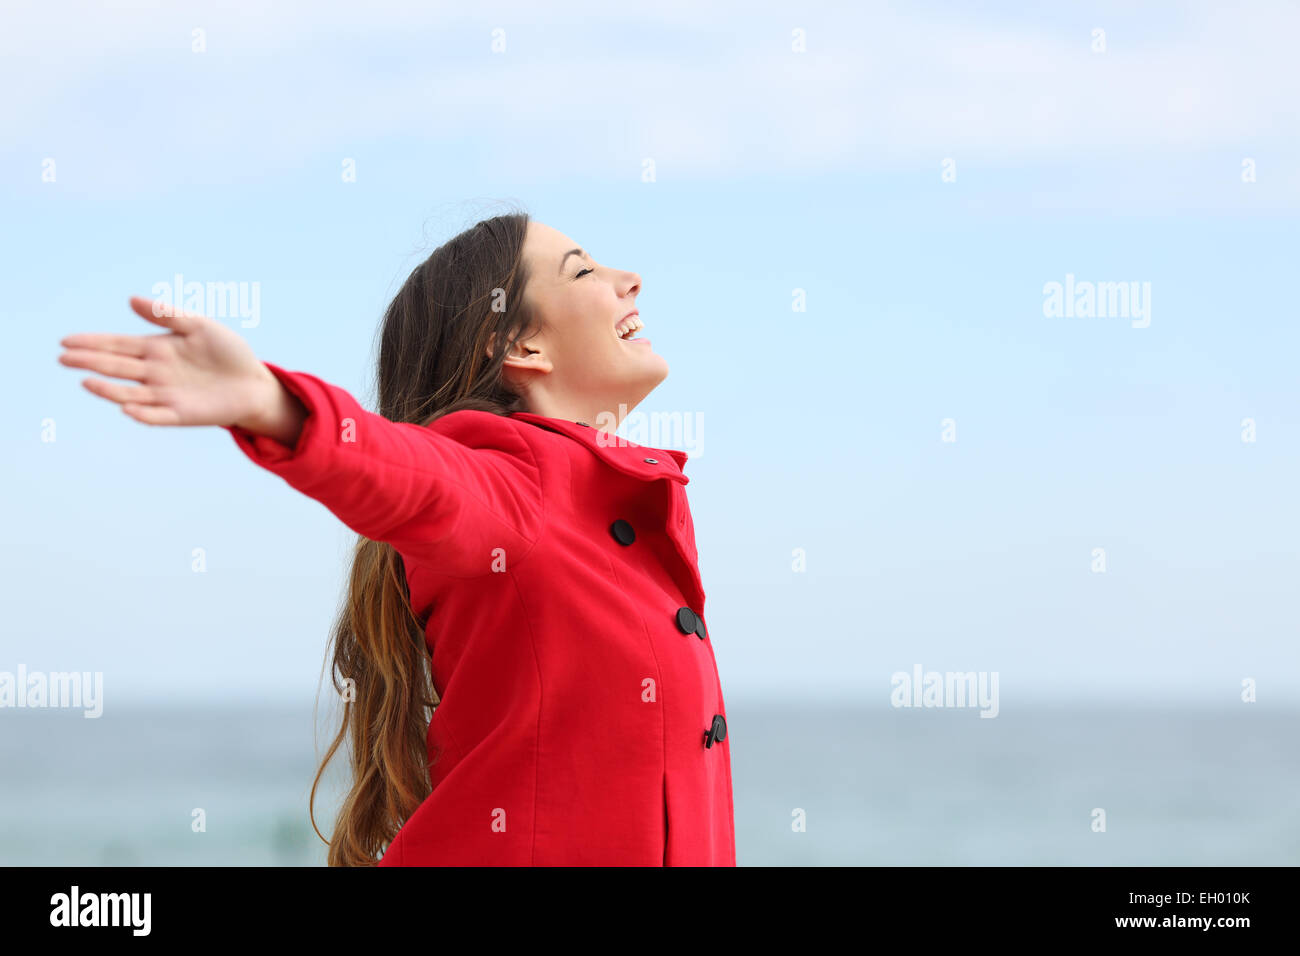 Felice Moda Profilo di donna respirazione profonda aria fresca in inverno sulla spiaggia Foto Stock